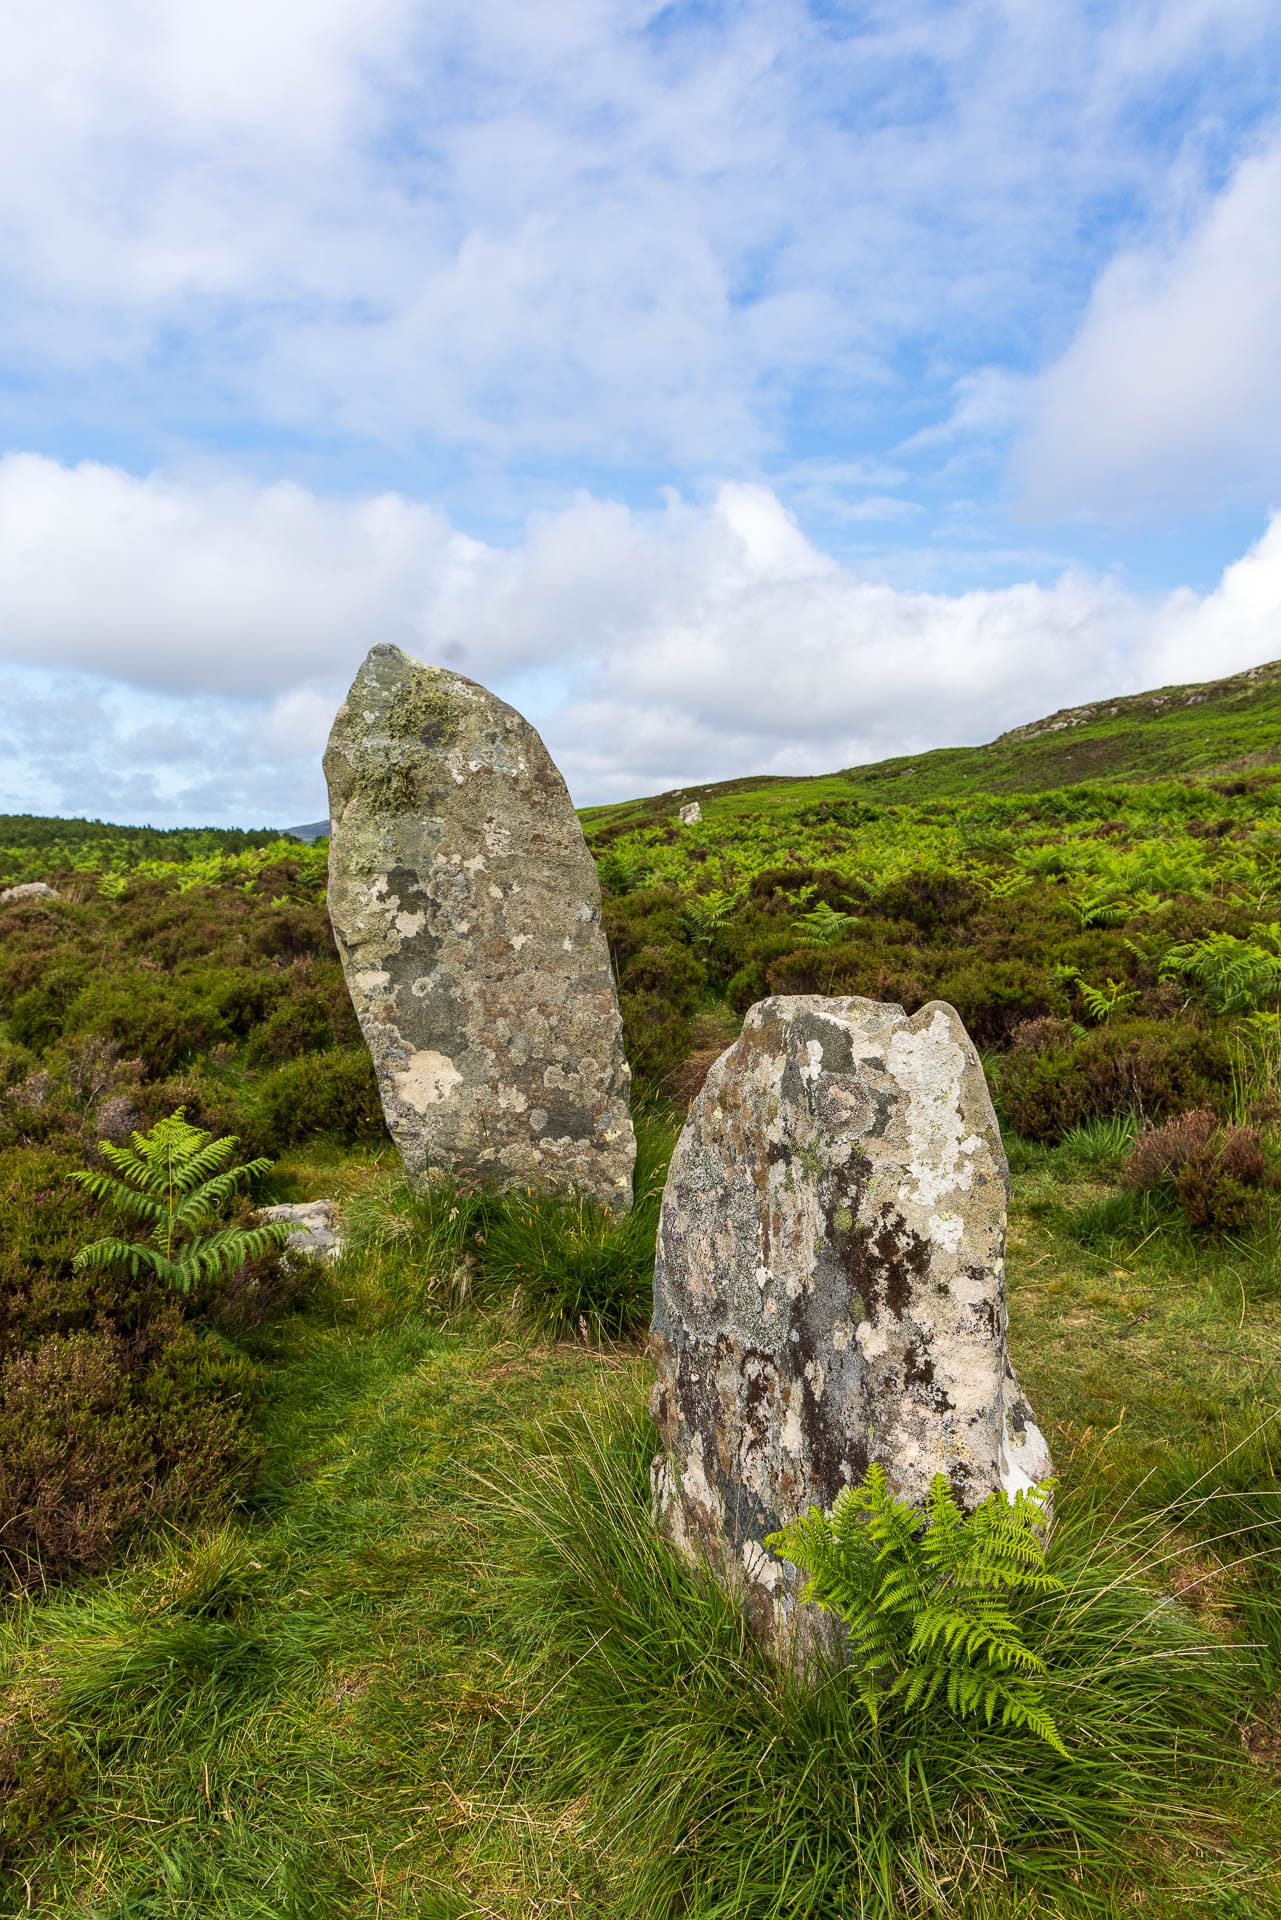 Zwei stehende Steine umgeben von einer grünen Farnlandschaft, blauer Himmel mit Wolken darüber.